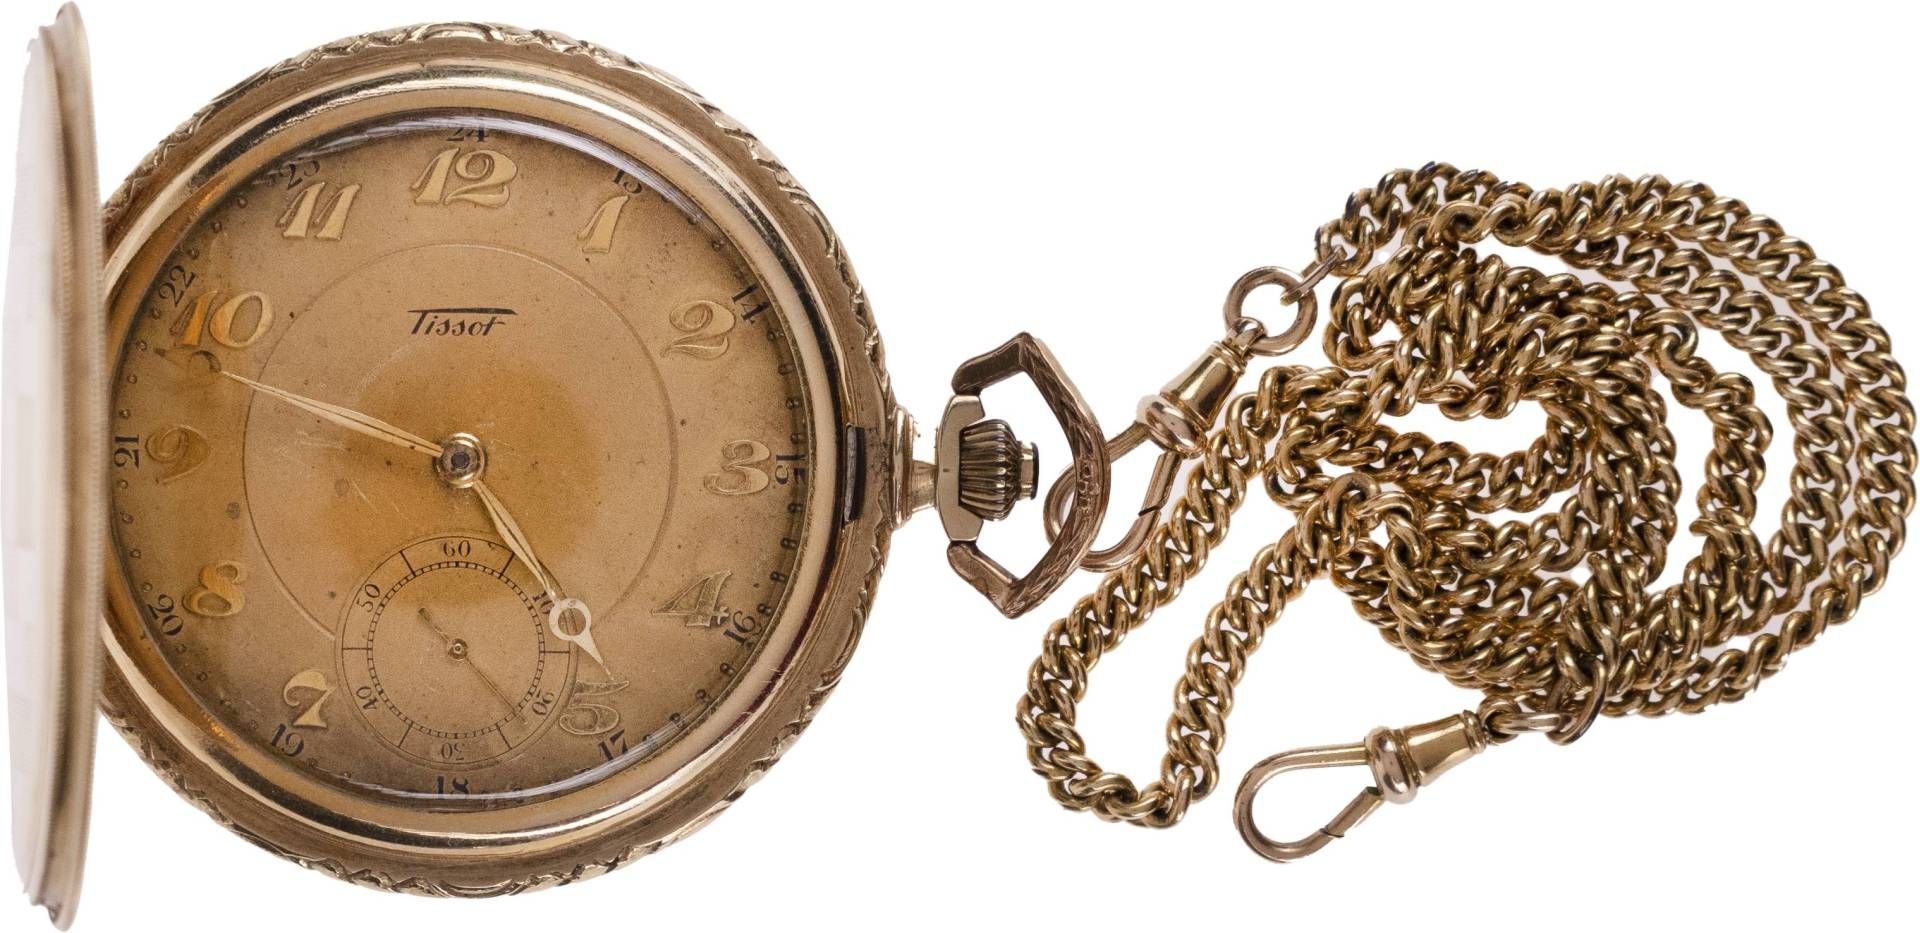 Tissot Locle Taschenuhr. Ca. 51mm, 585er Gold, Handaufzug. Champgnerfarbenes Ziffernblatt mit